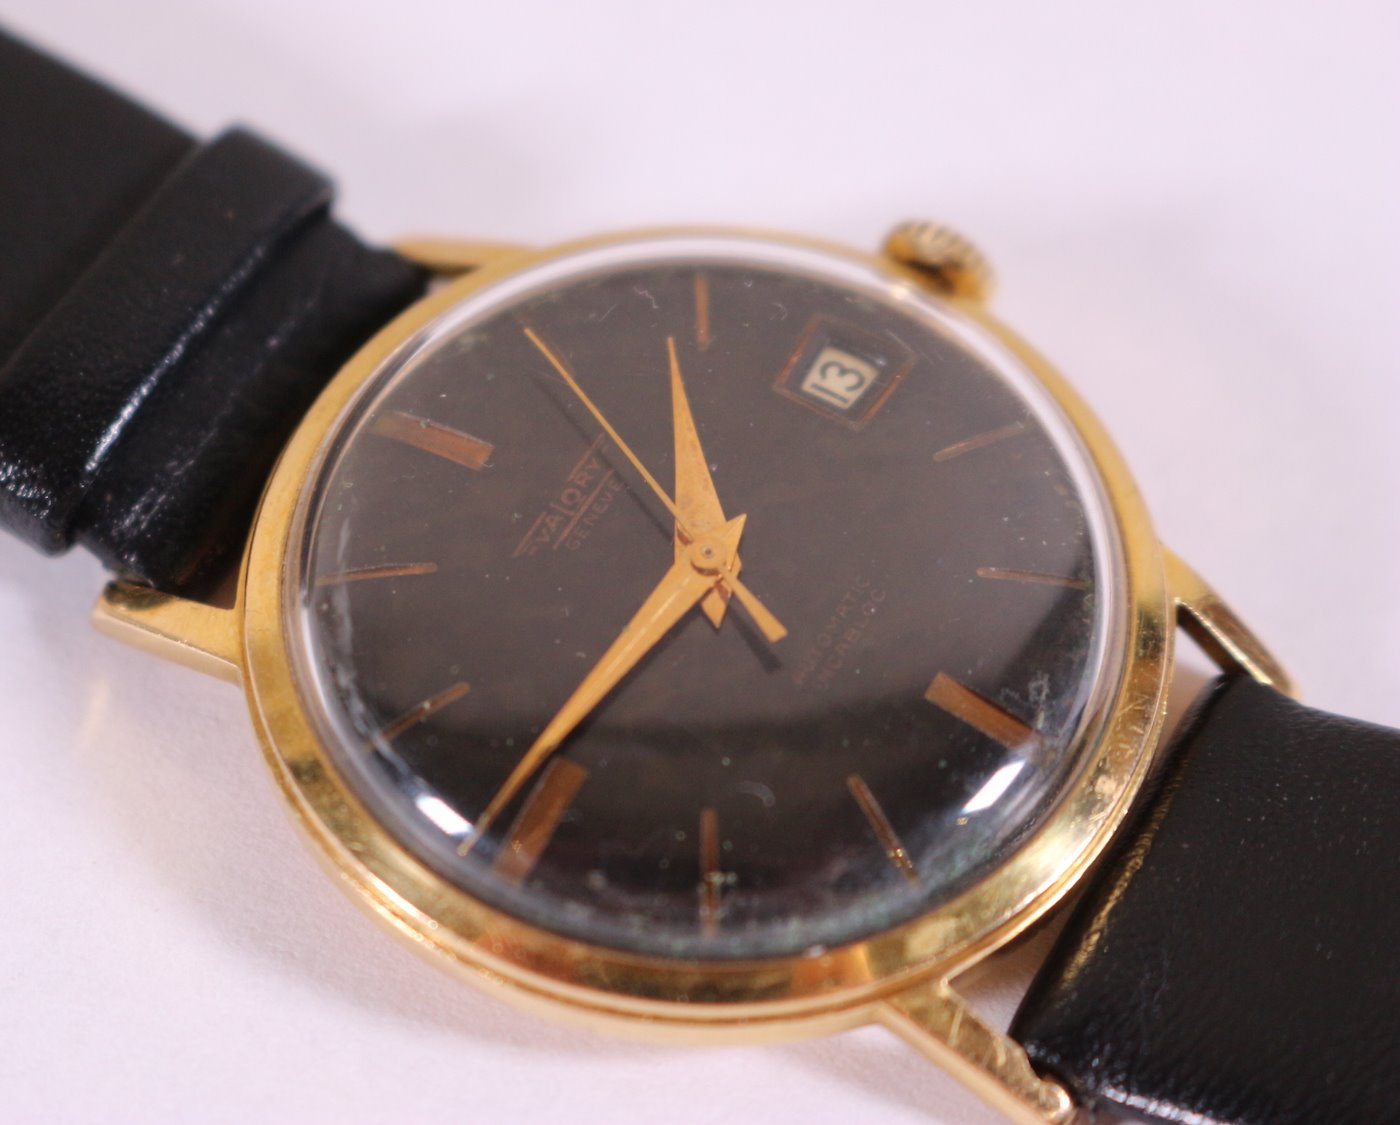 Zlaté pánské náramkové hodinky Walory Swiss - Pánské zlaté náramkové hodinky, zlato, punc LYRA, 750/1000, hrubá hmotnost 31,65g. Přiloženo osvědčení PÚ.